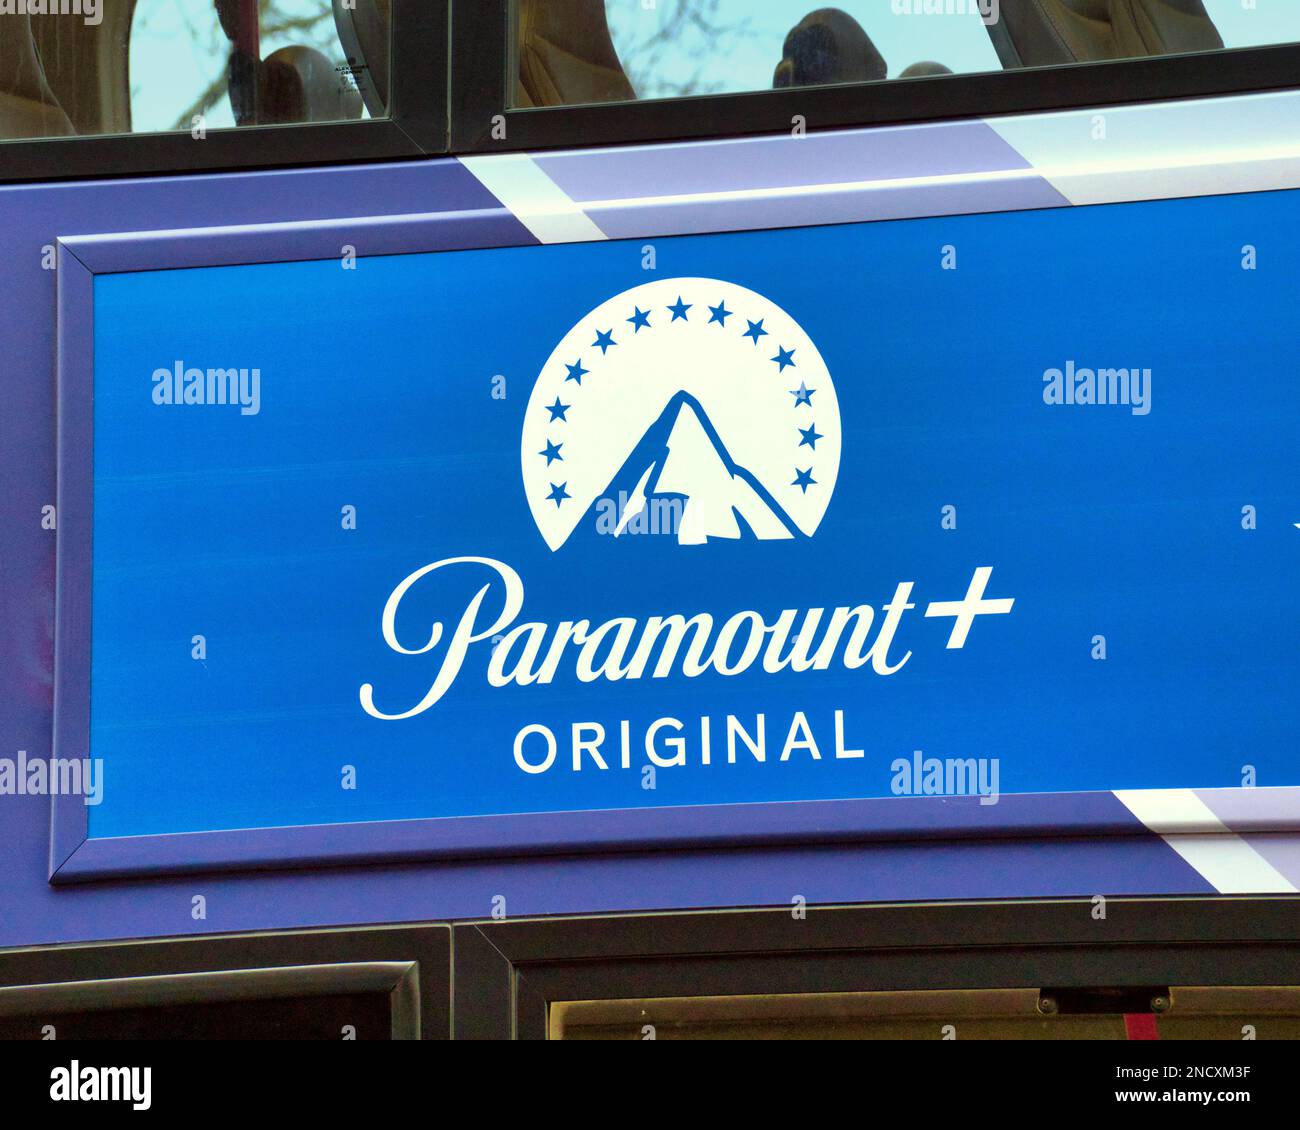 Paramount plus + publicité originale sur le bus Banque D'Images